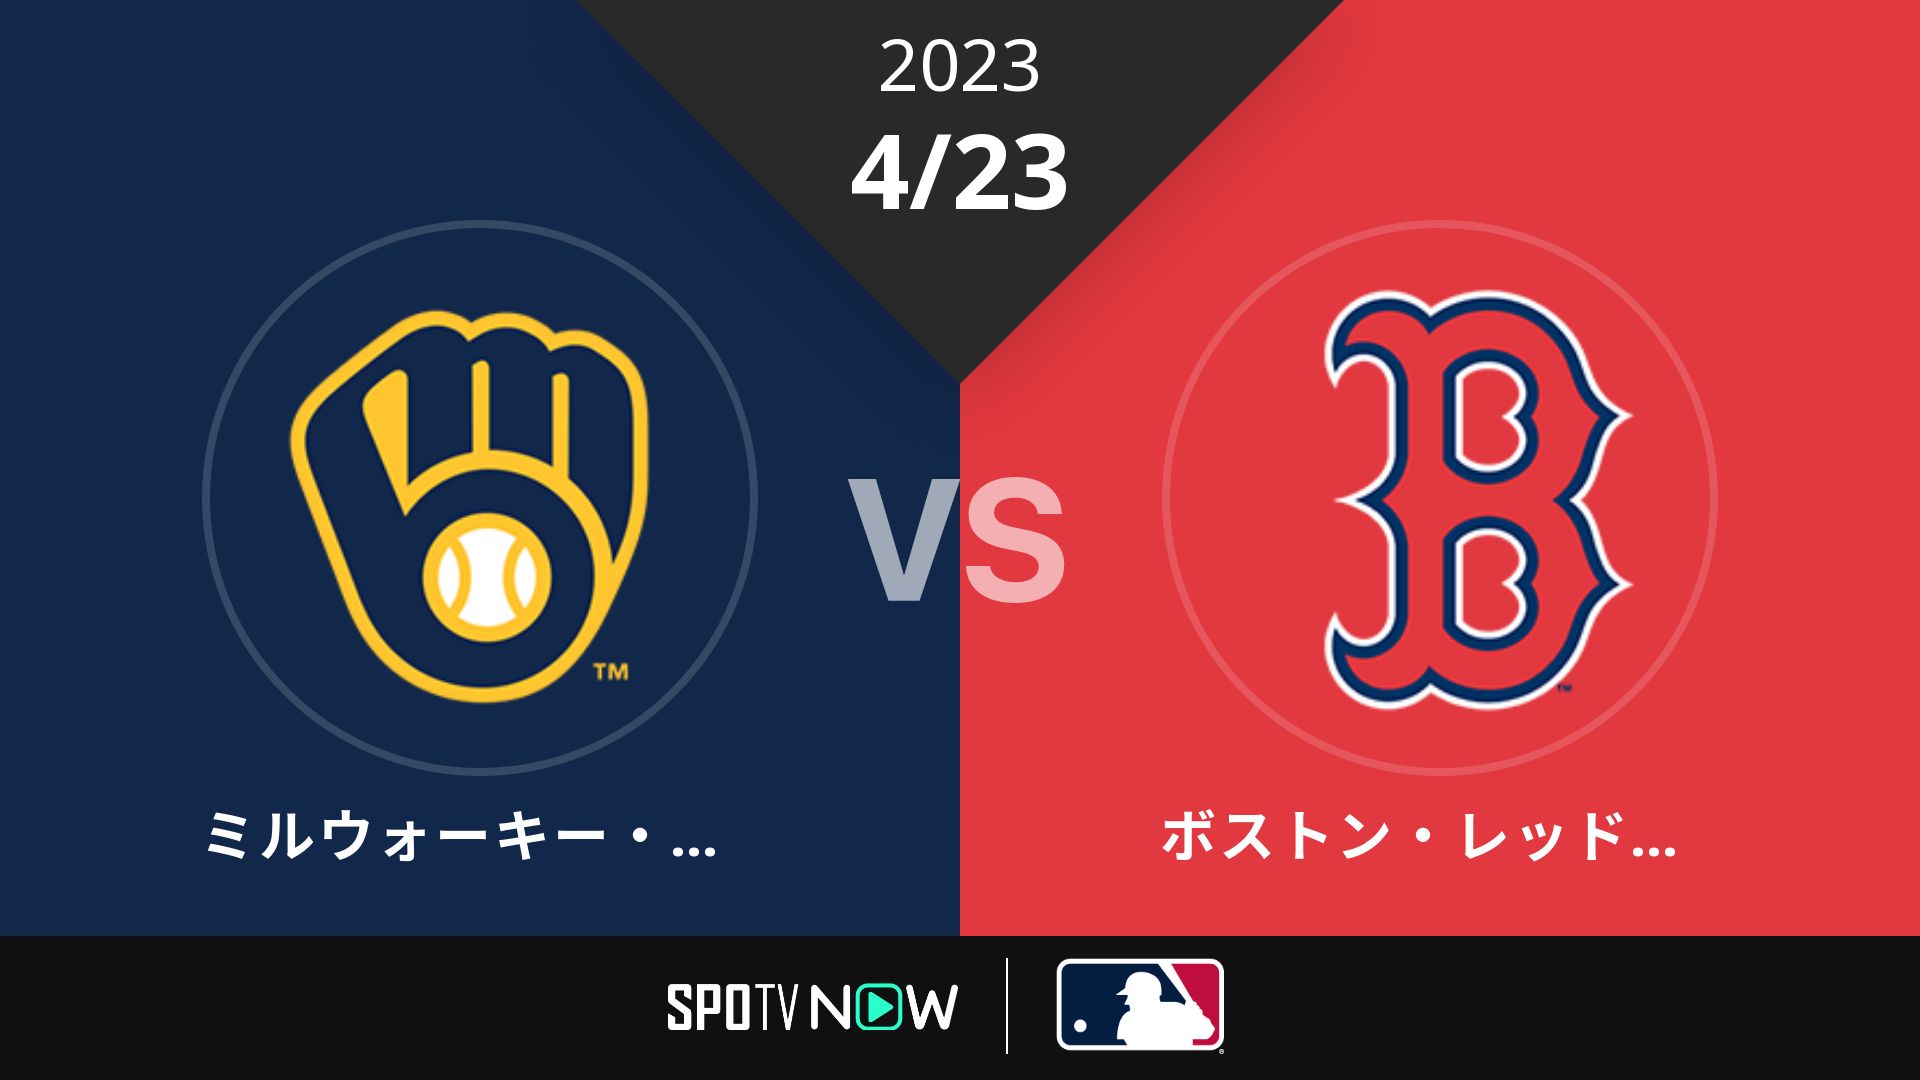 2023/4/23 ブリュワーズ vs Rソックス [MLB]